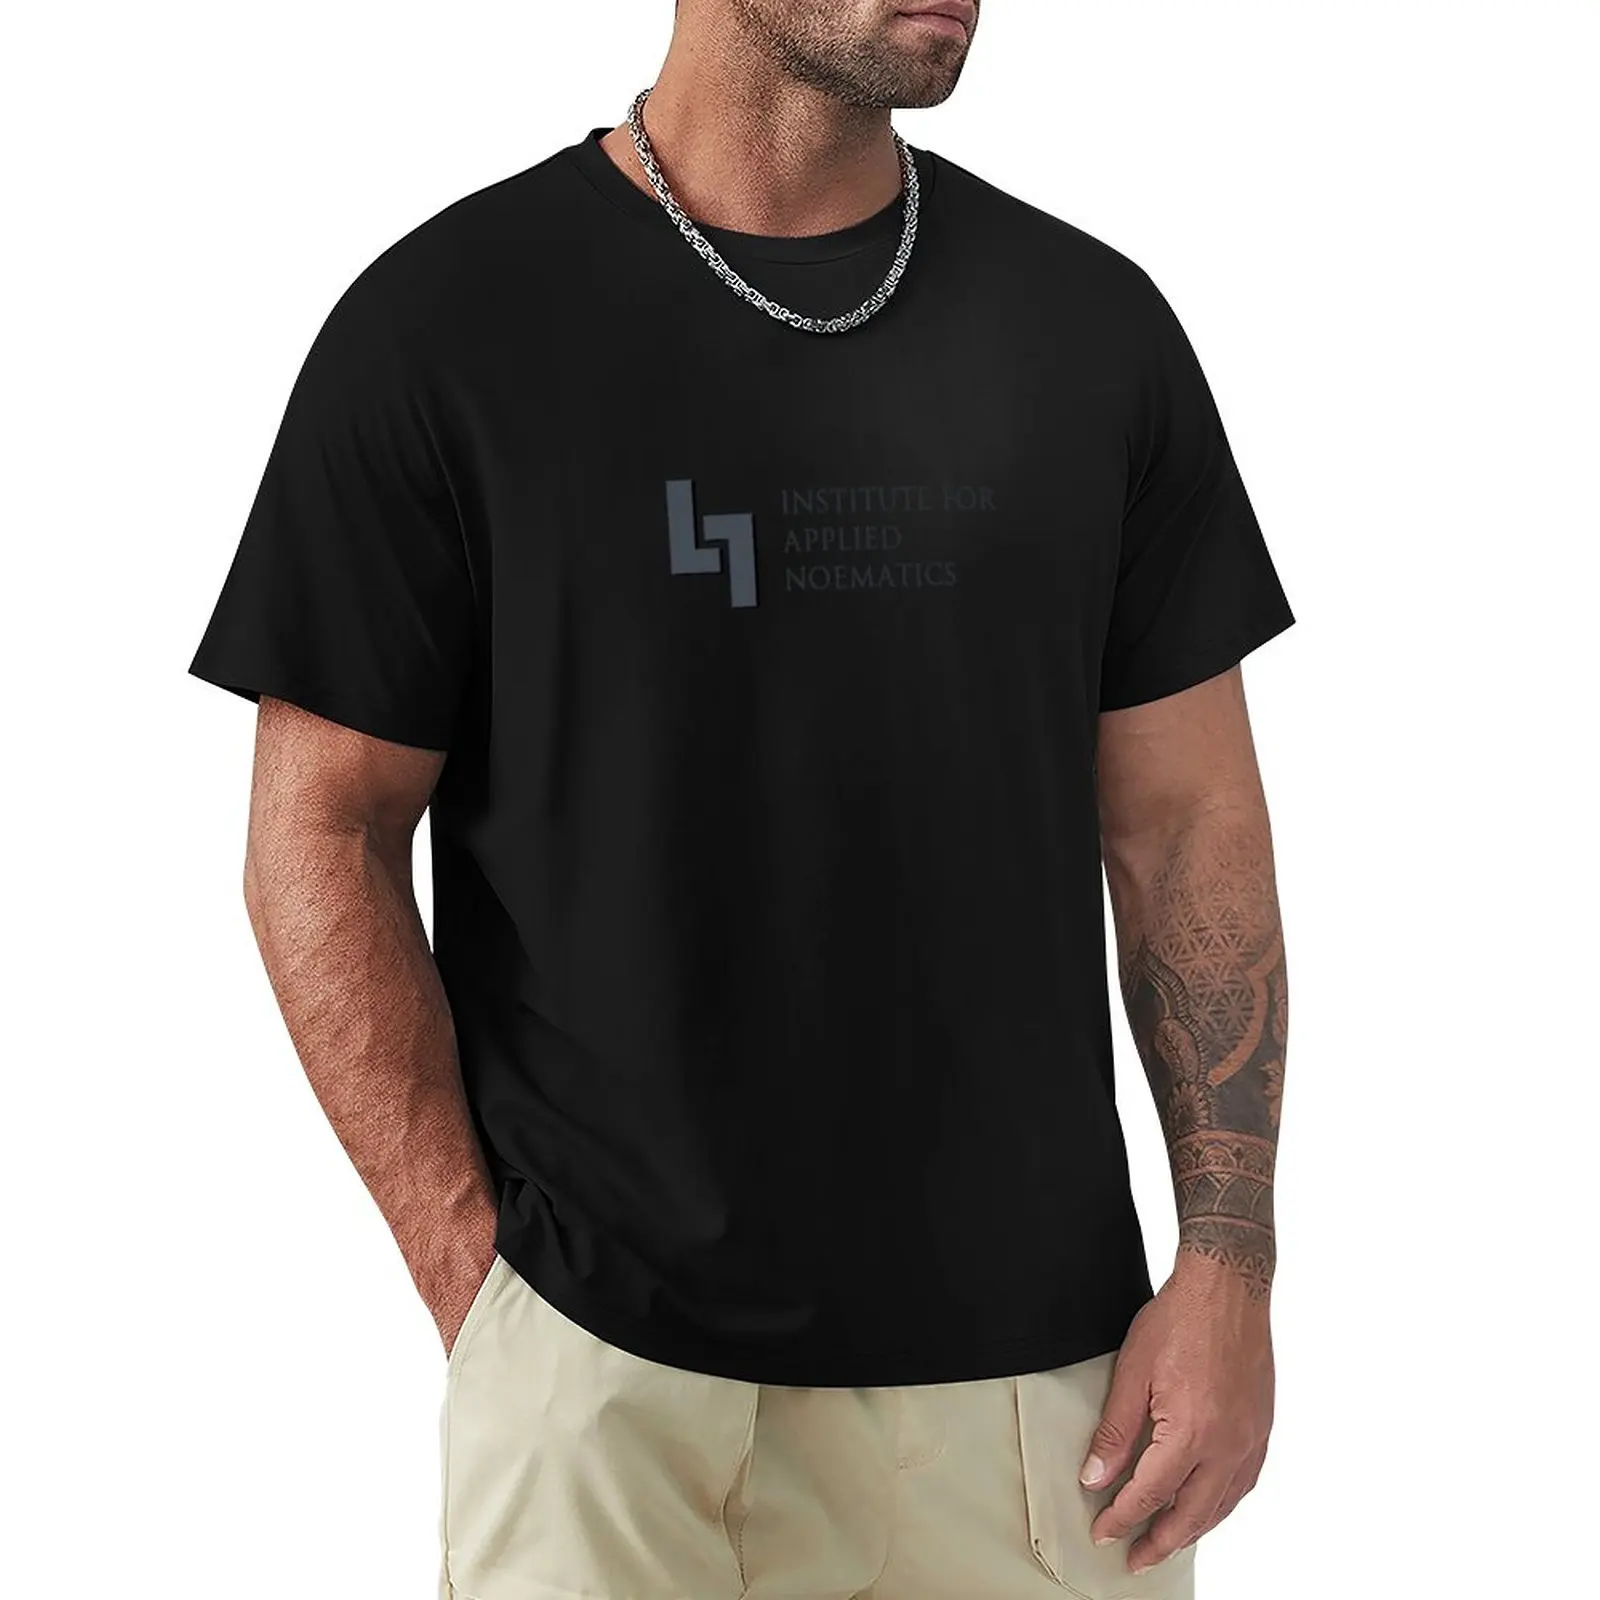 Į Talos Principas - Institutas Taikomas Noematics T-Shirt Marškinėliai topai mielas drabužių tshirts vyrams